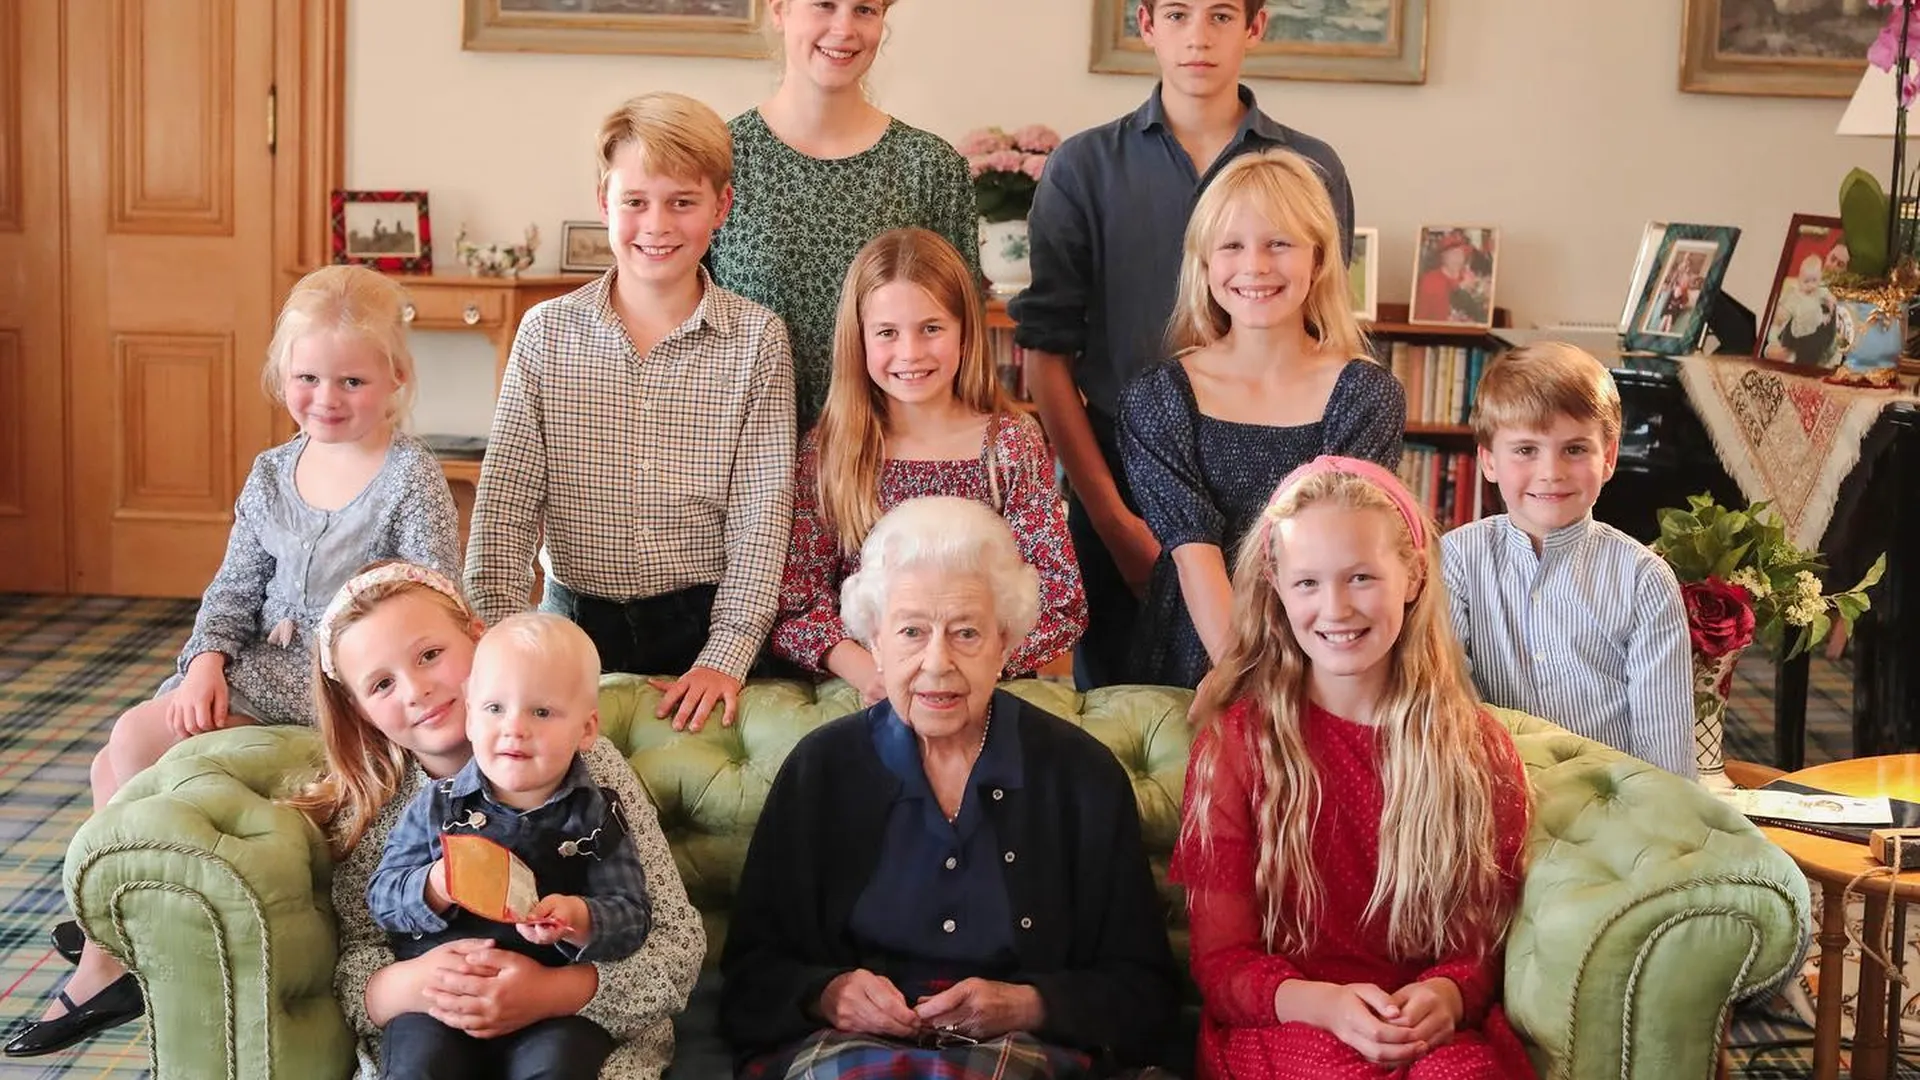 Кейт Миддлтон почтила память Елизаветы II, опубликовав ее фото с внуками и правнуками